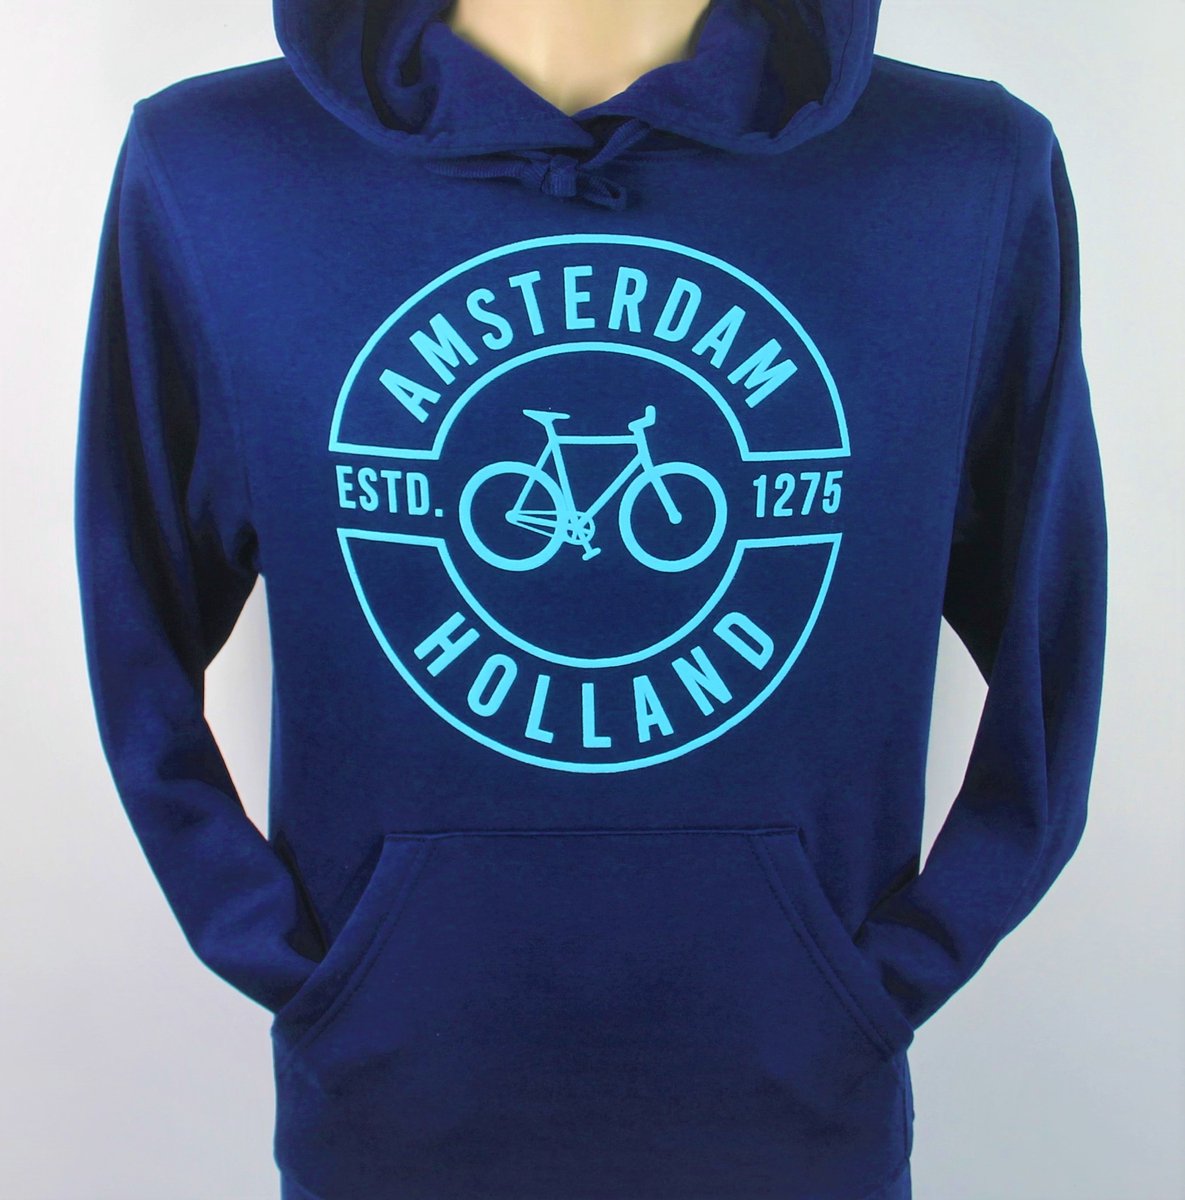 Hooded Sweater - Met Trekkoord - Capuchon - Chill - Trui - Vest - met capuchon - Outdoor - Fiets - Discover - 1275 -Amsterdam - Bike Town - Travel - Blauwe Fiets - Navy - Maat XXL - 2XL